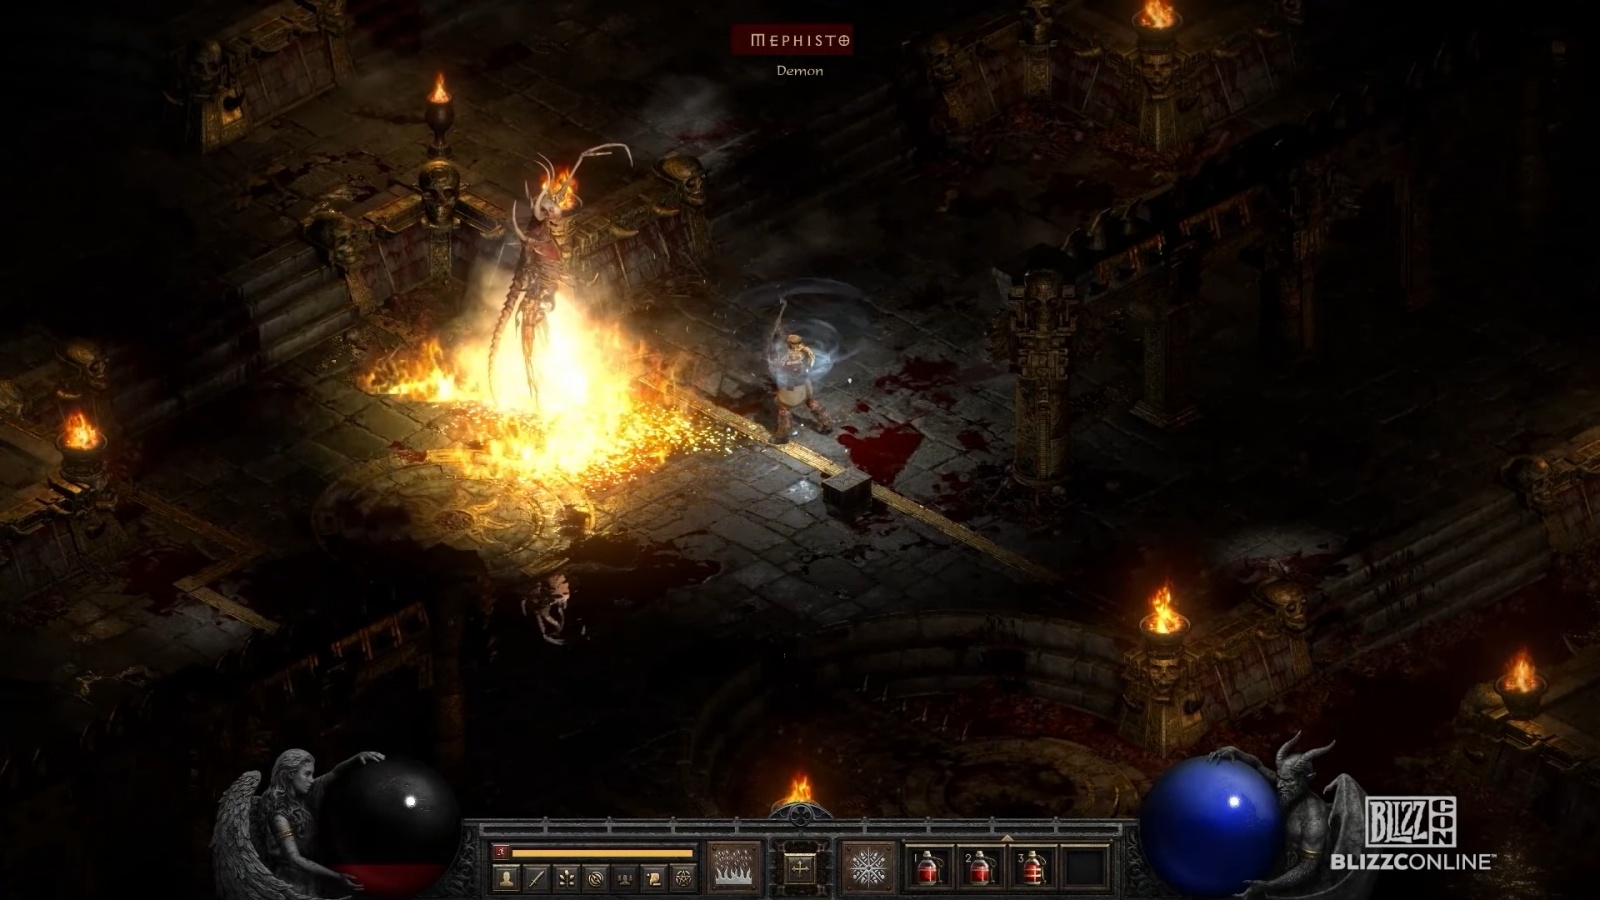 BlizzCon Online: ремастер Diablo II и Разбойница в Diablo IV